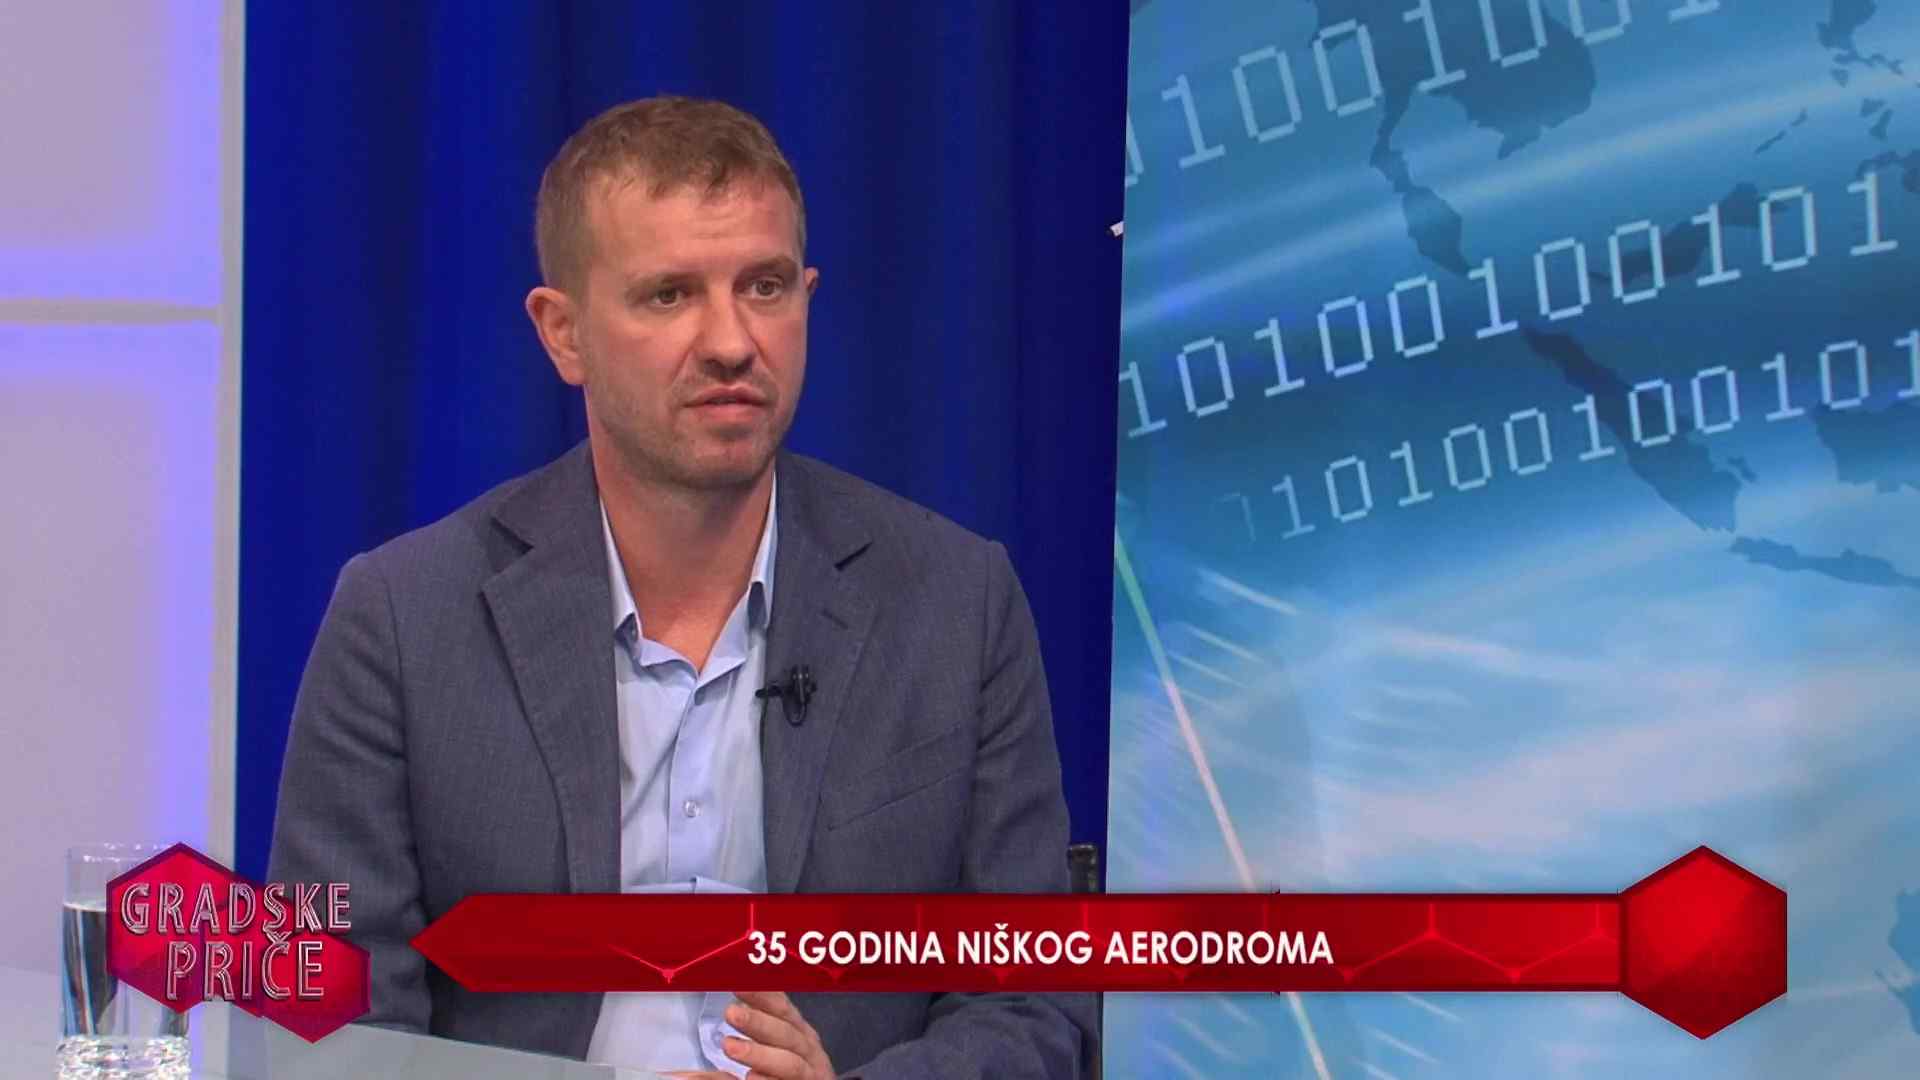 35 GODINA NIŠKOG AERODROMA – GRADSKE PRIČE 13.10.2021.